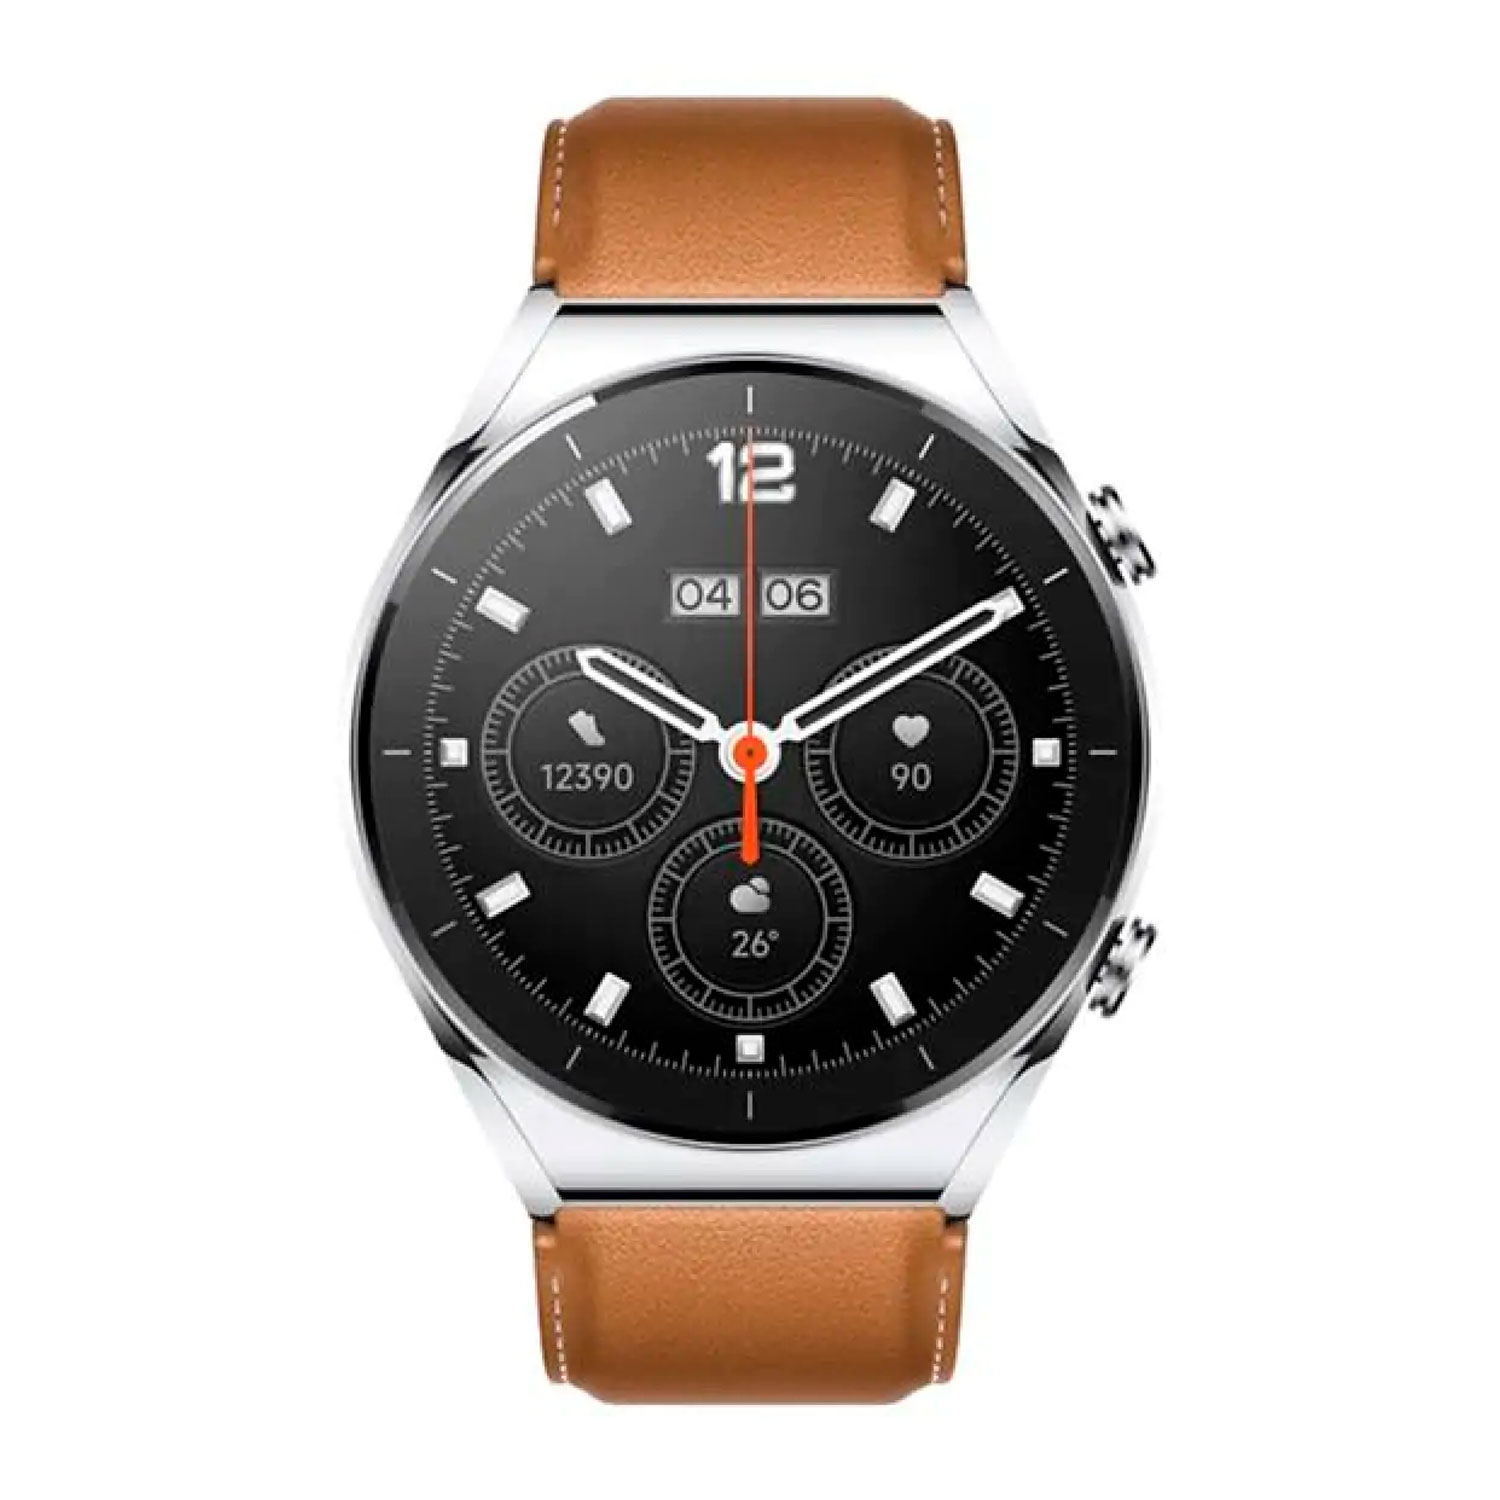 Smartwatch Xiaomi Watch S1 BHR5669AP - Prata